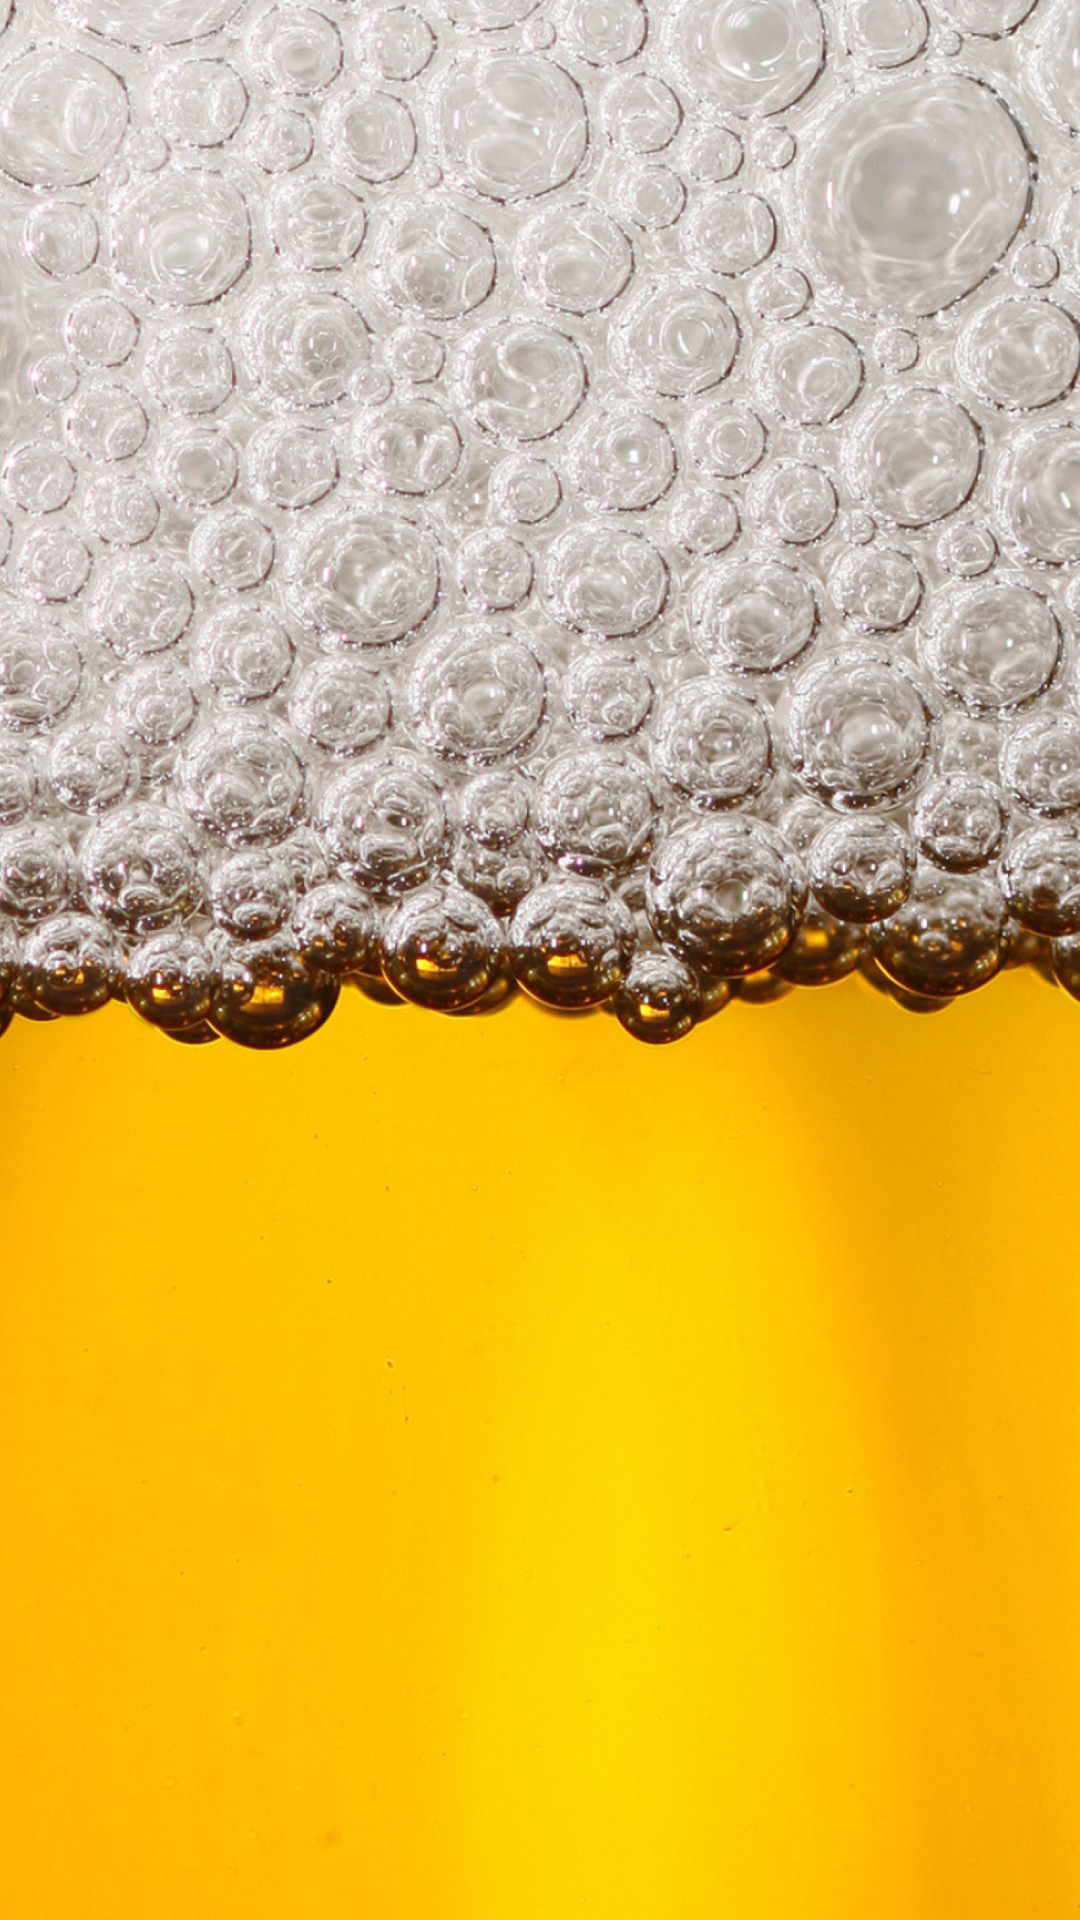 Beer Bubbles wallpaper 1080x1920